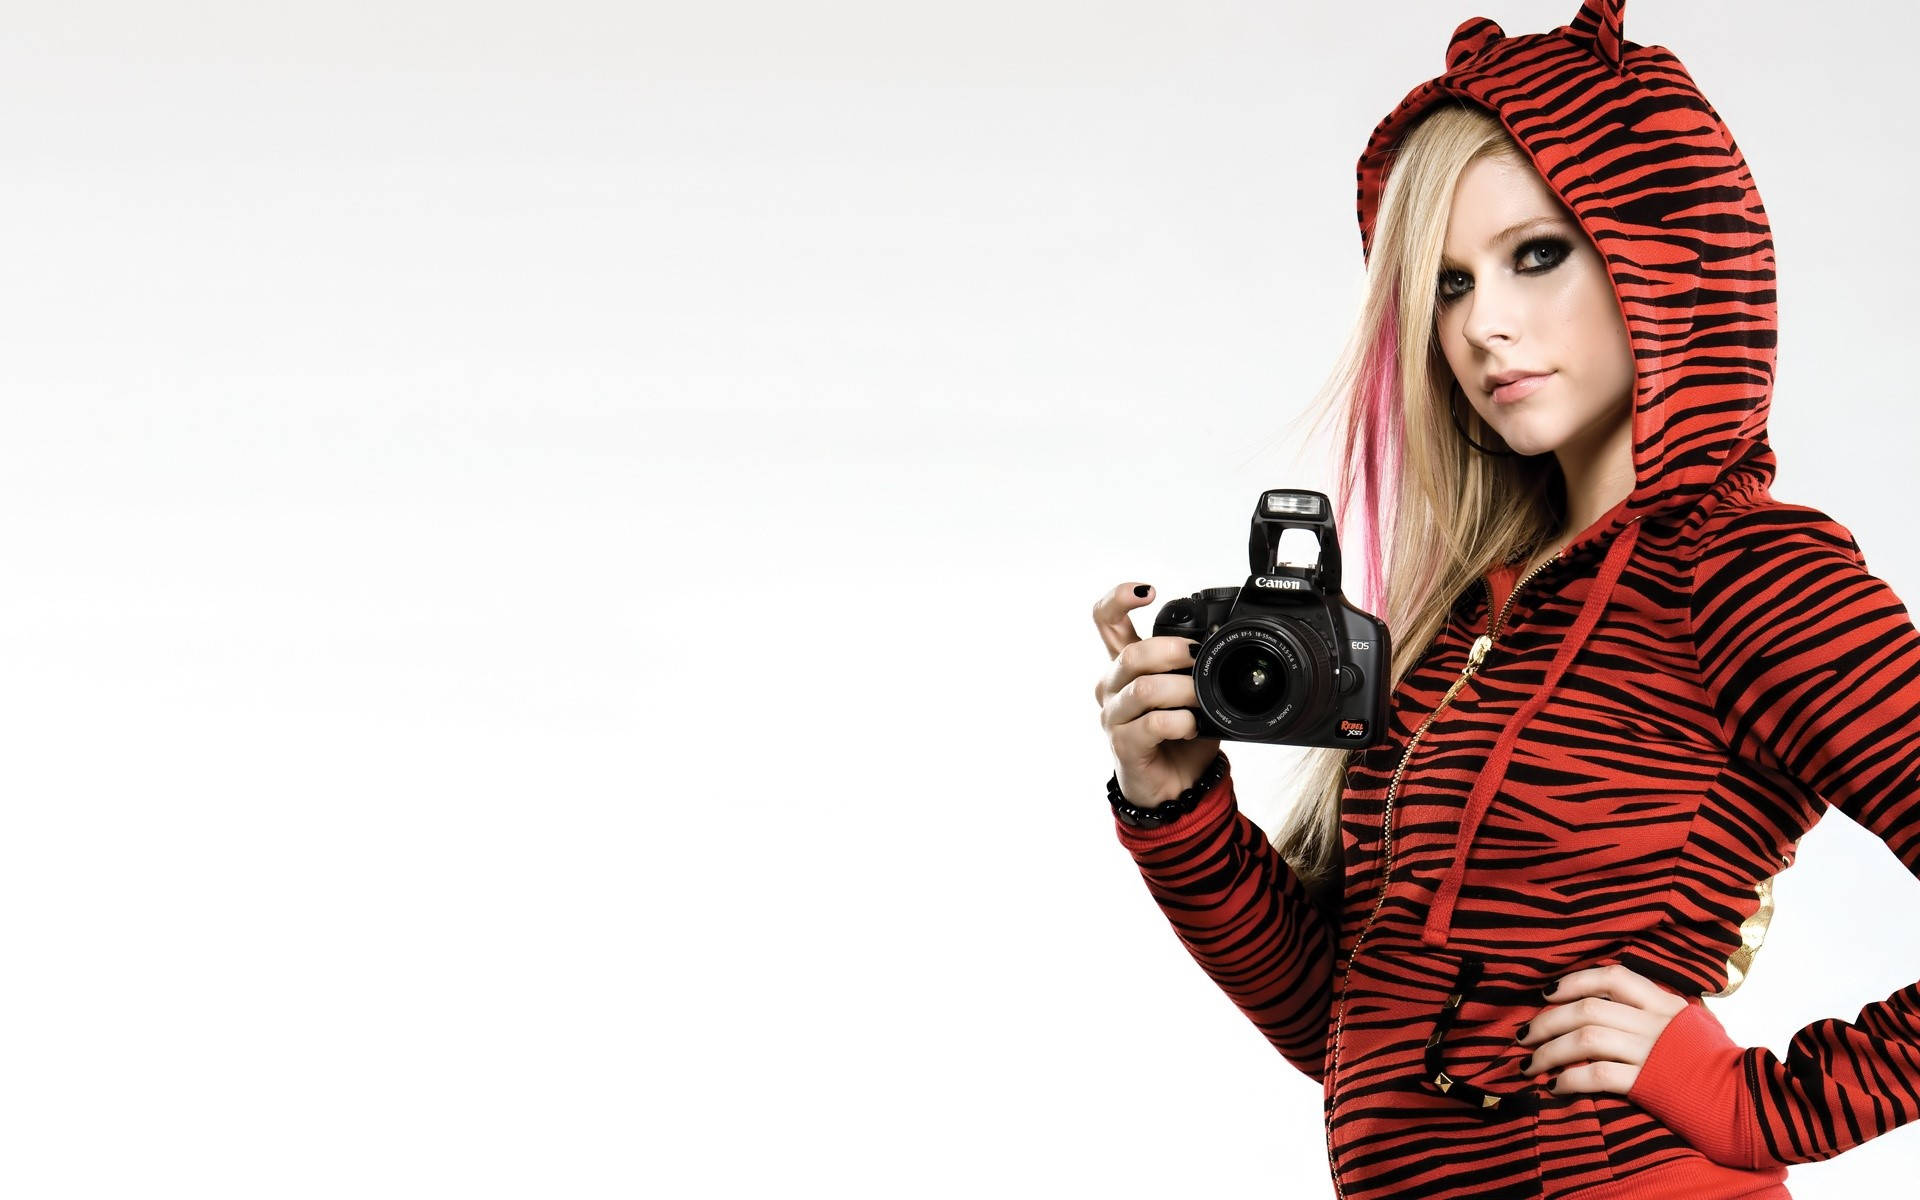 Avril Lavigne Rocking A Stylish Tiger Jacket